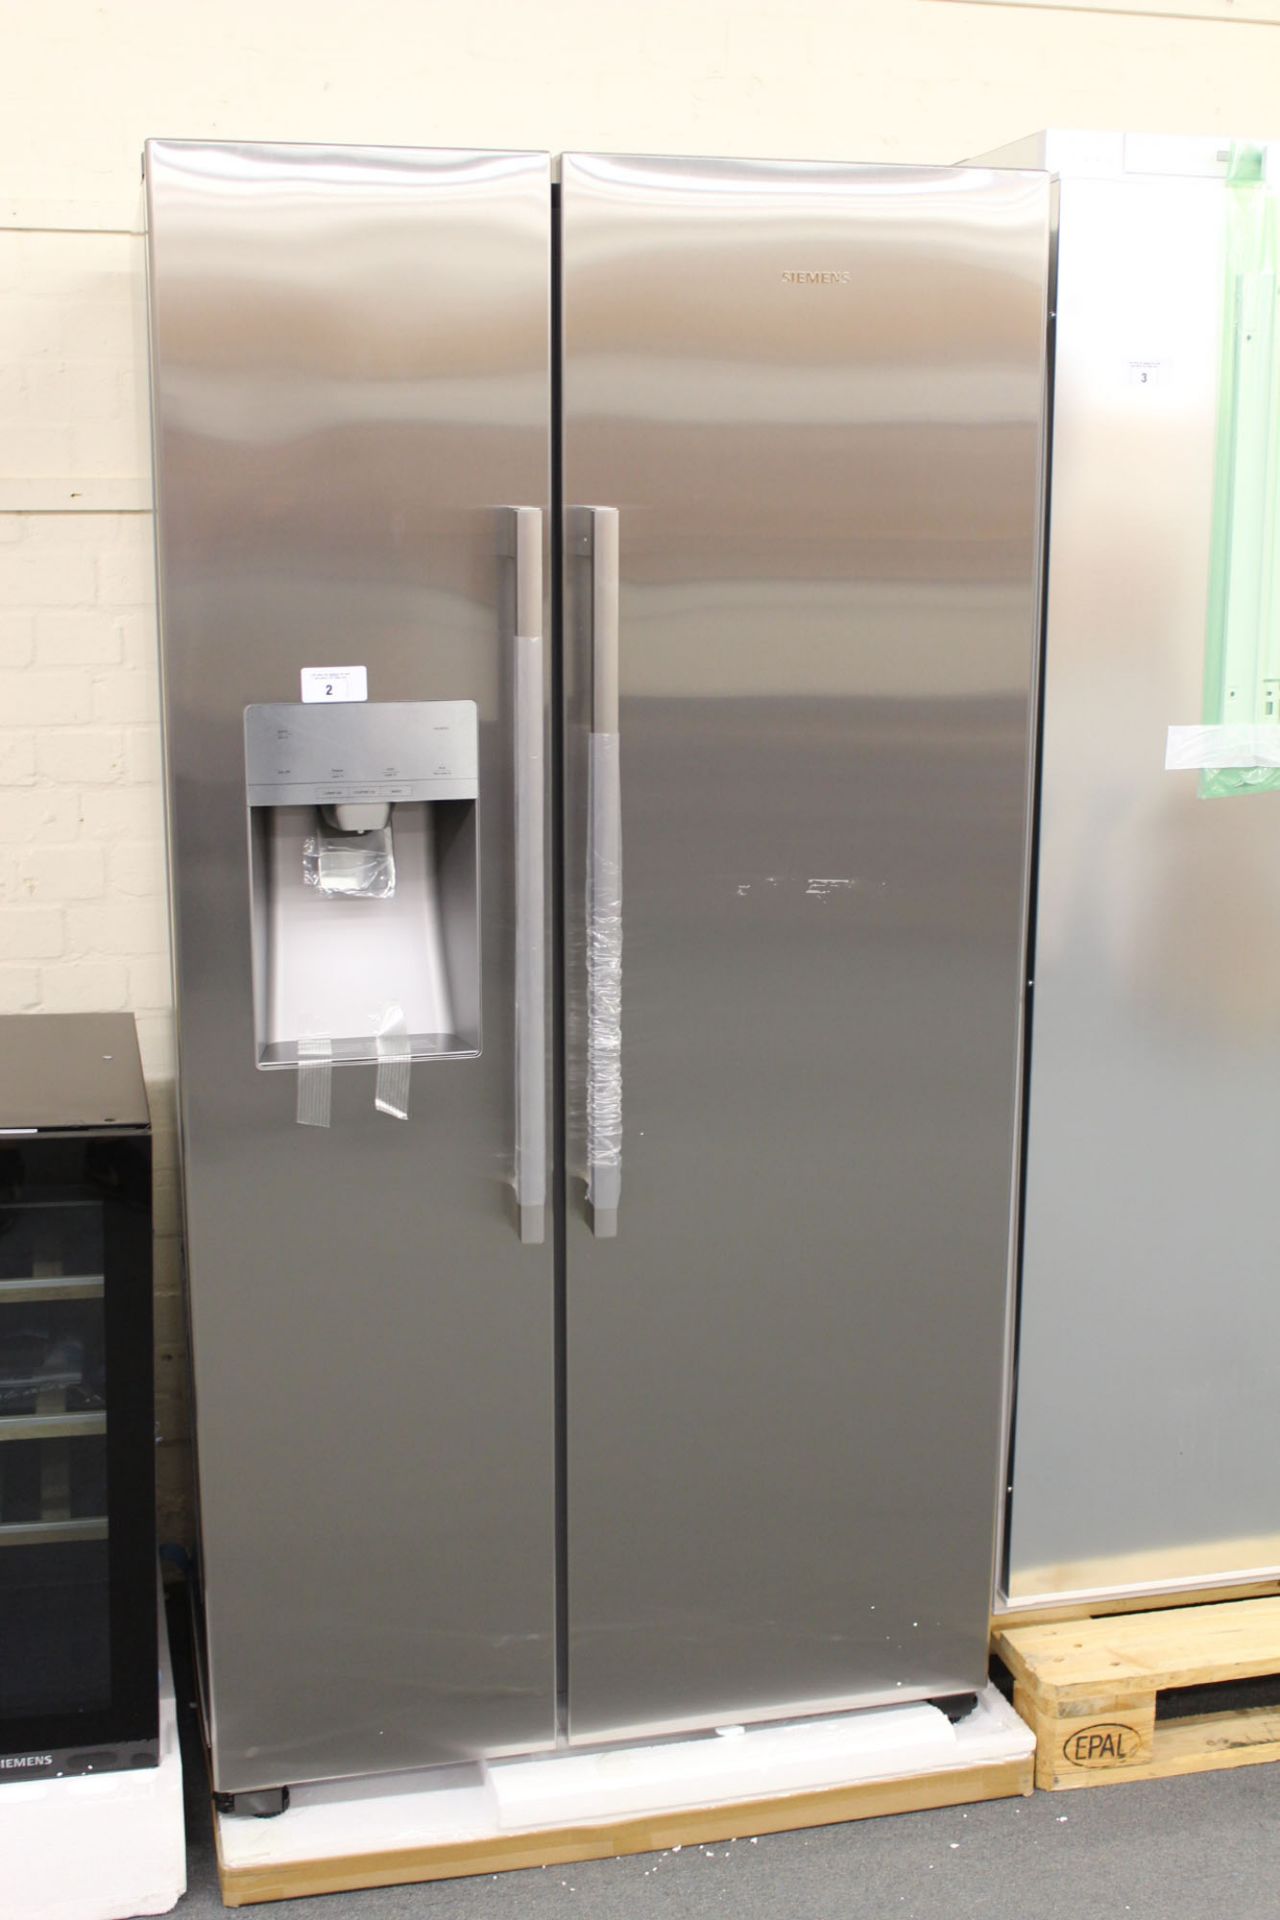 KA93DVIFPGB Siemens Side-by-side fridge-freezer